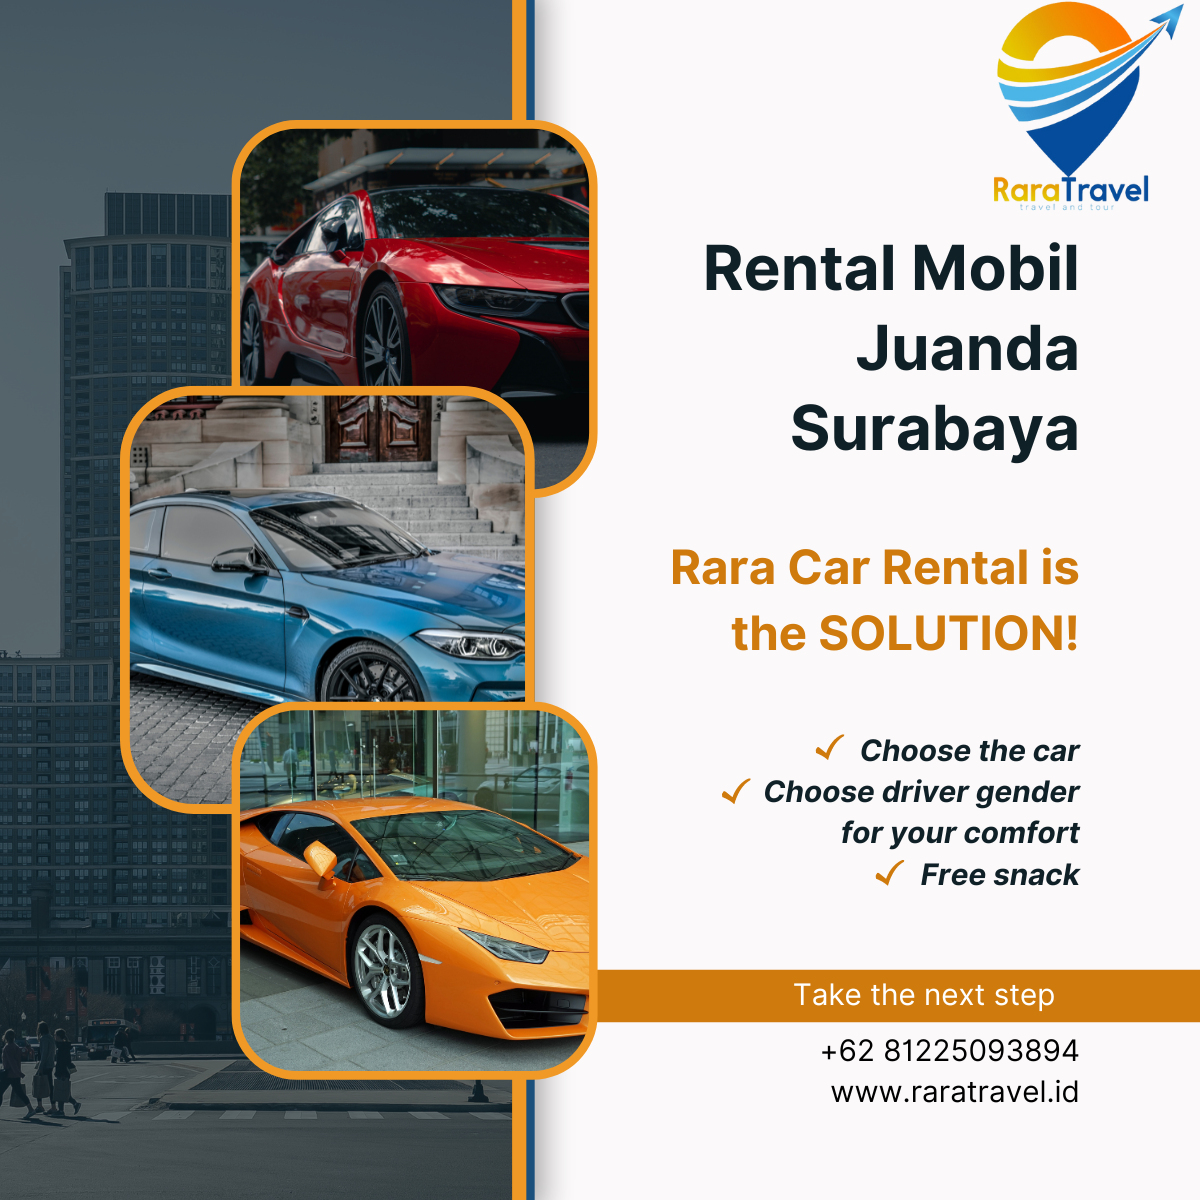 Rental Mobil Juanda Surabaya: Harga Sewa Mulai Rp 200 Ribuan Lepas Kunci